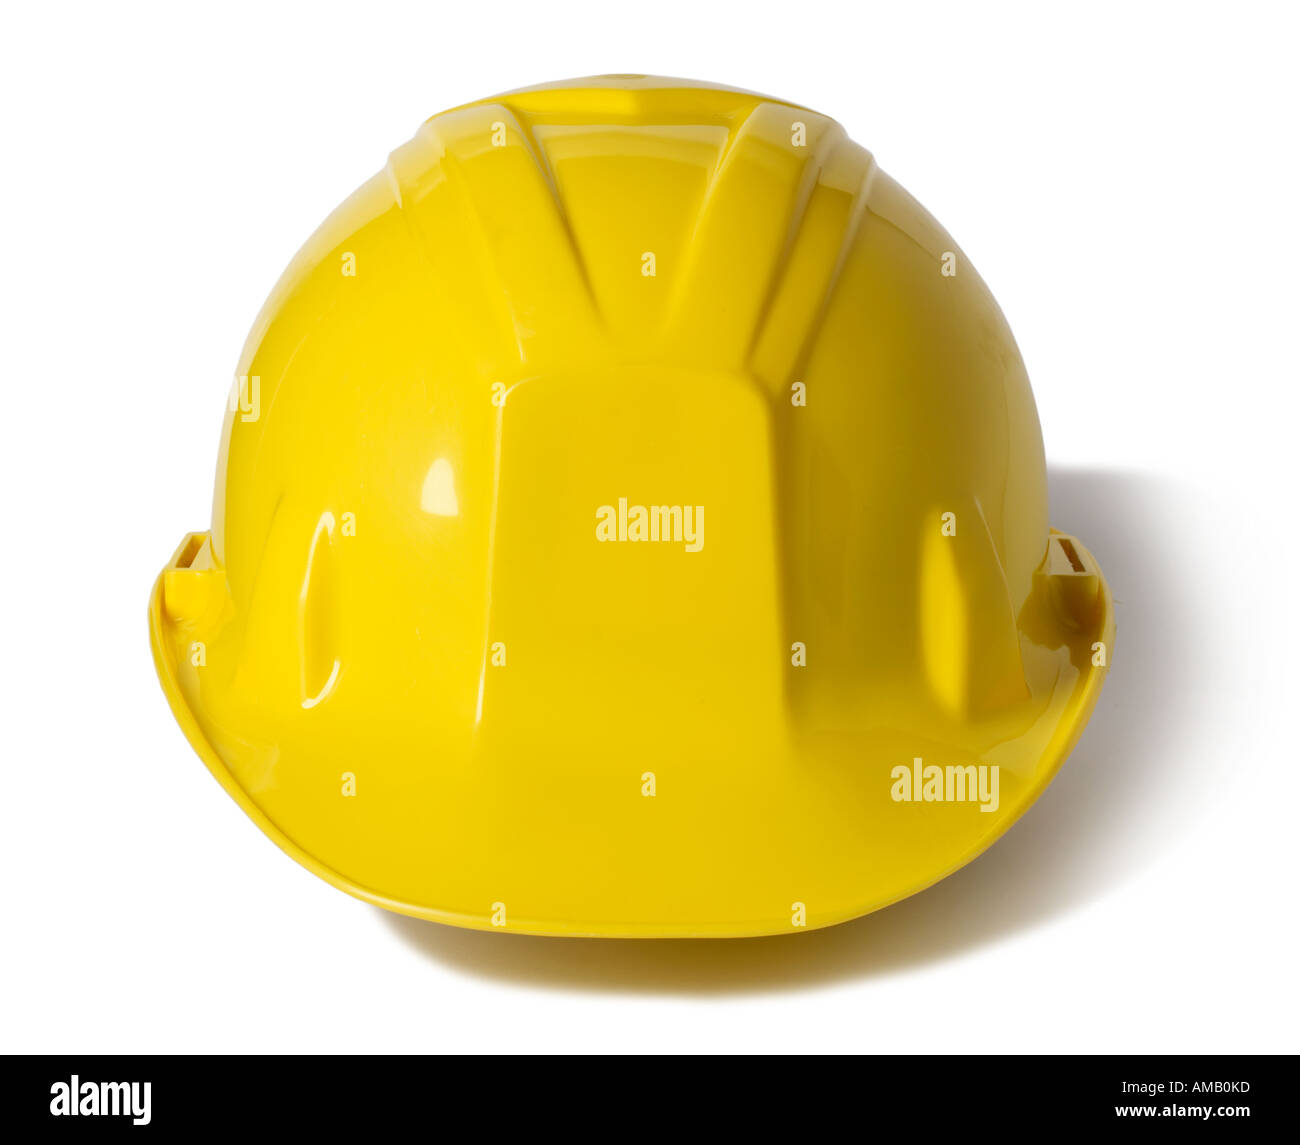 Gelb Schutzhelm Bau-Schutz Stockfoto